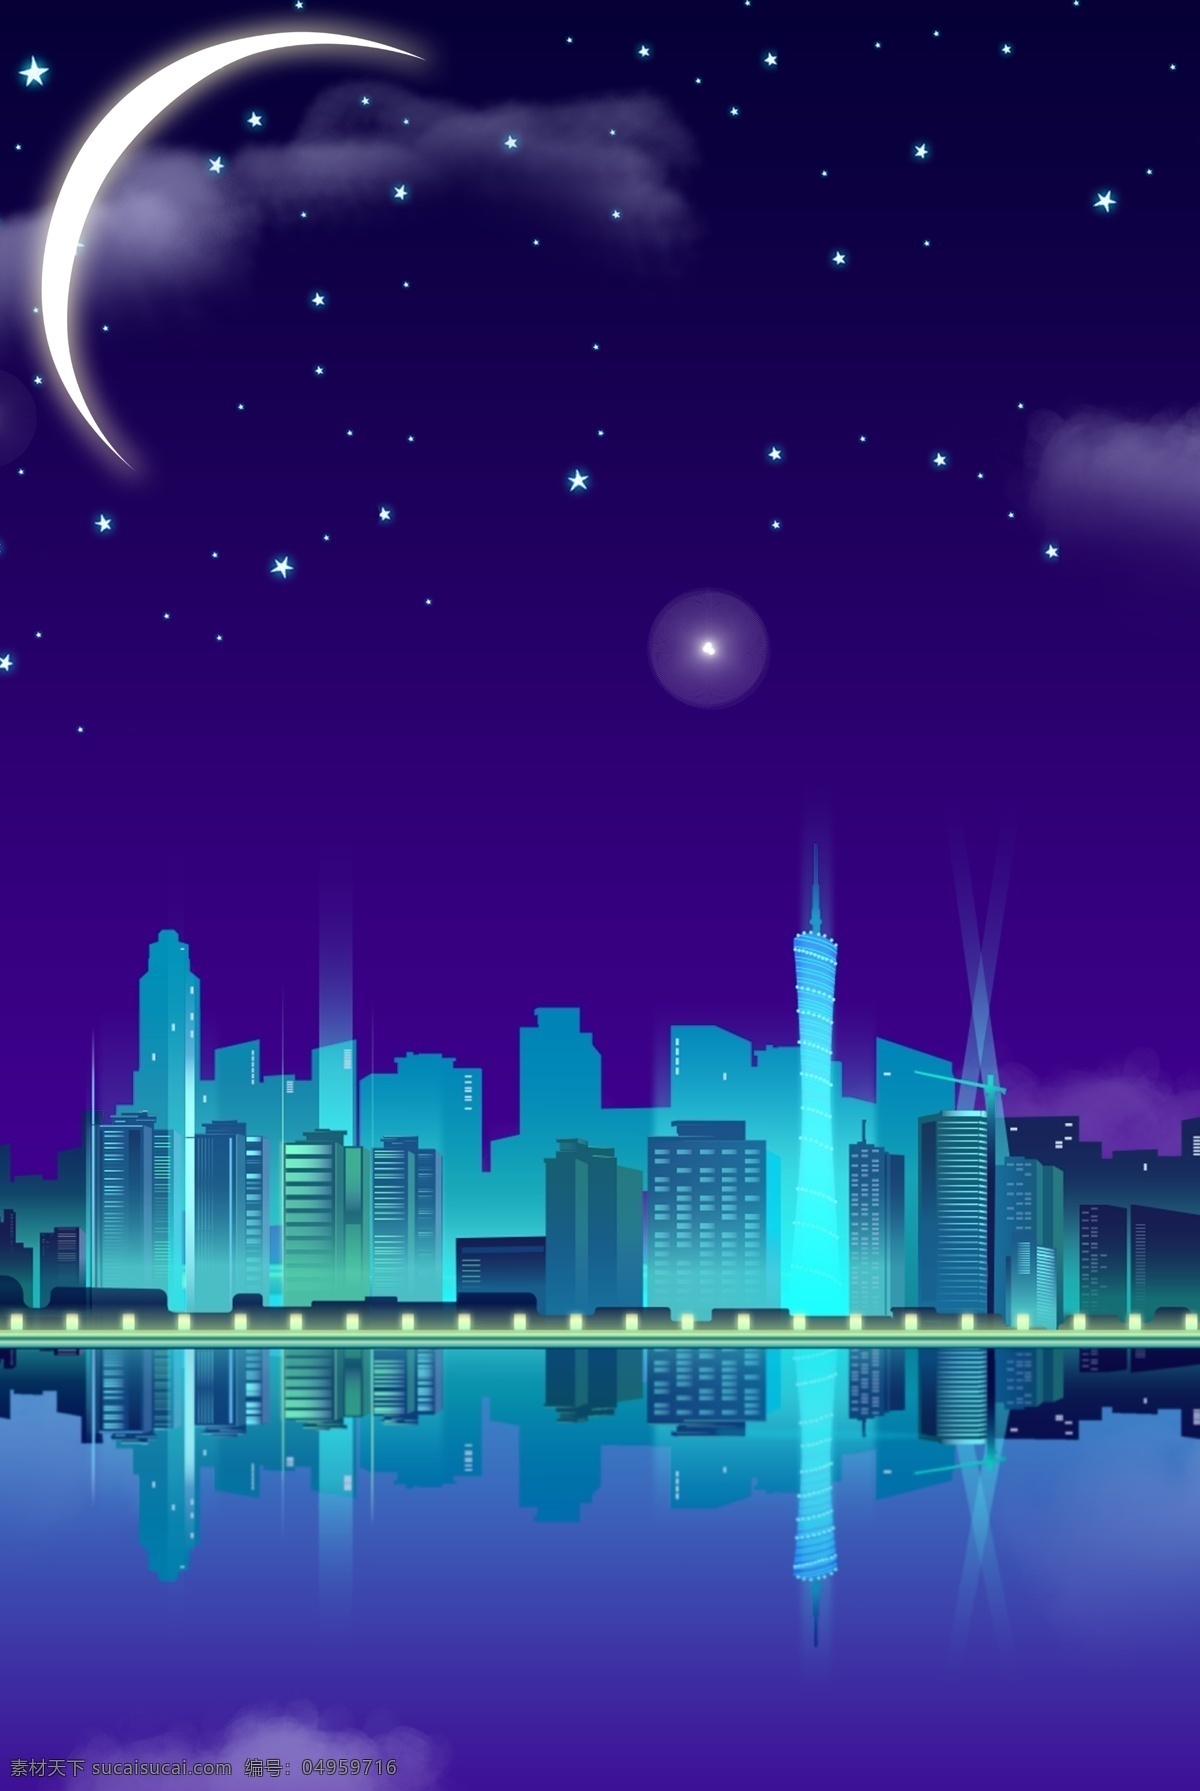 扁平 简约 城市 建筑 卡通 夜景 夜晚 矢量 睡眠 星空 月亮